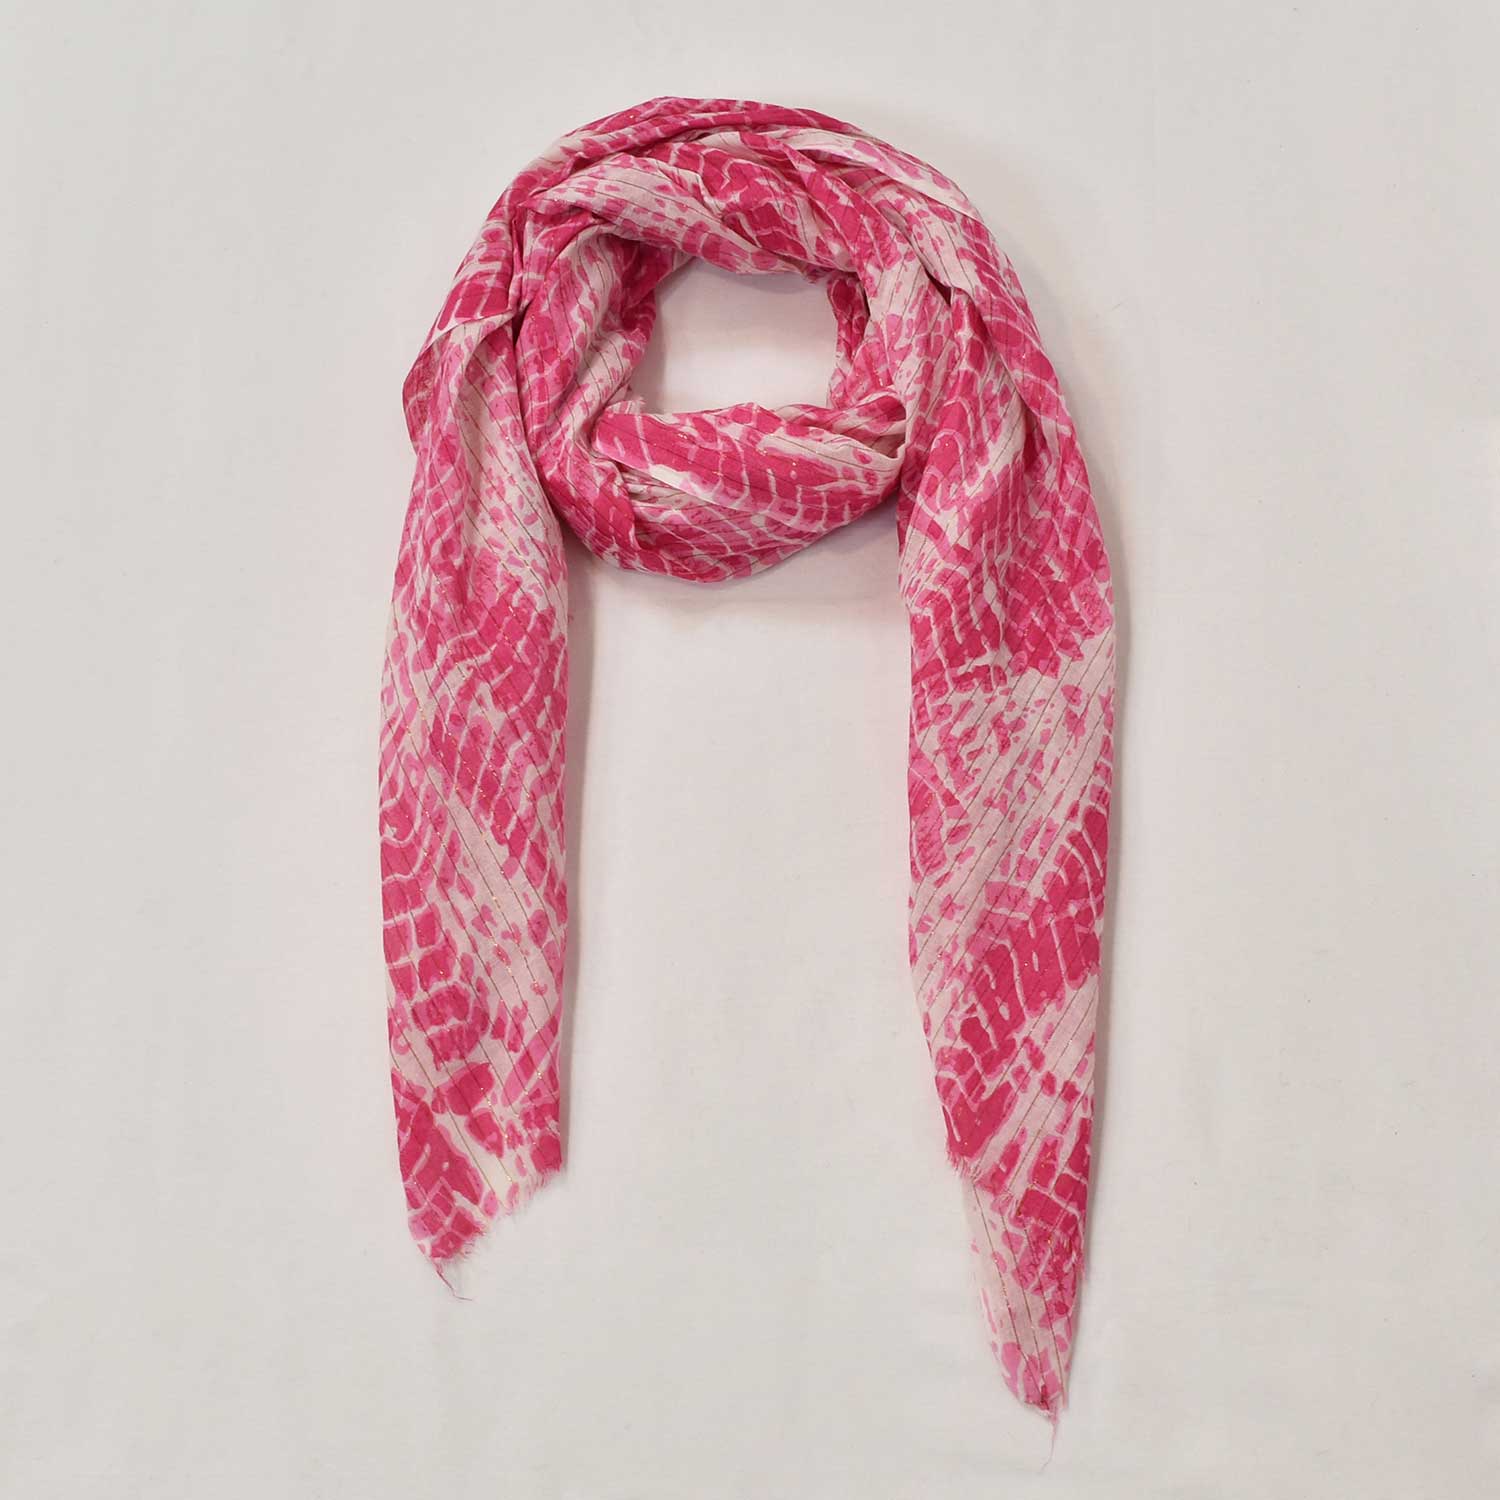 Pink shiny tie dye scarf